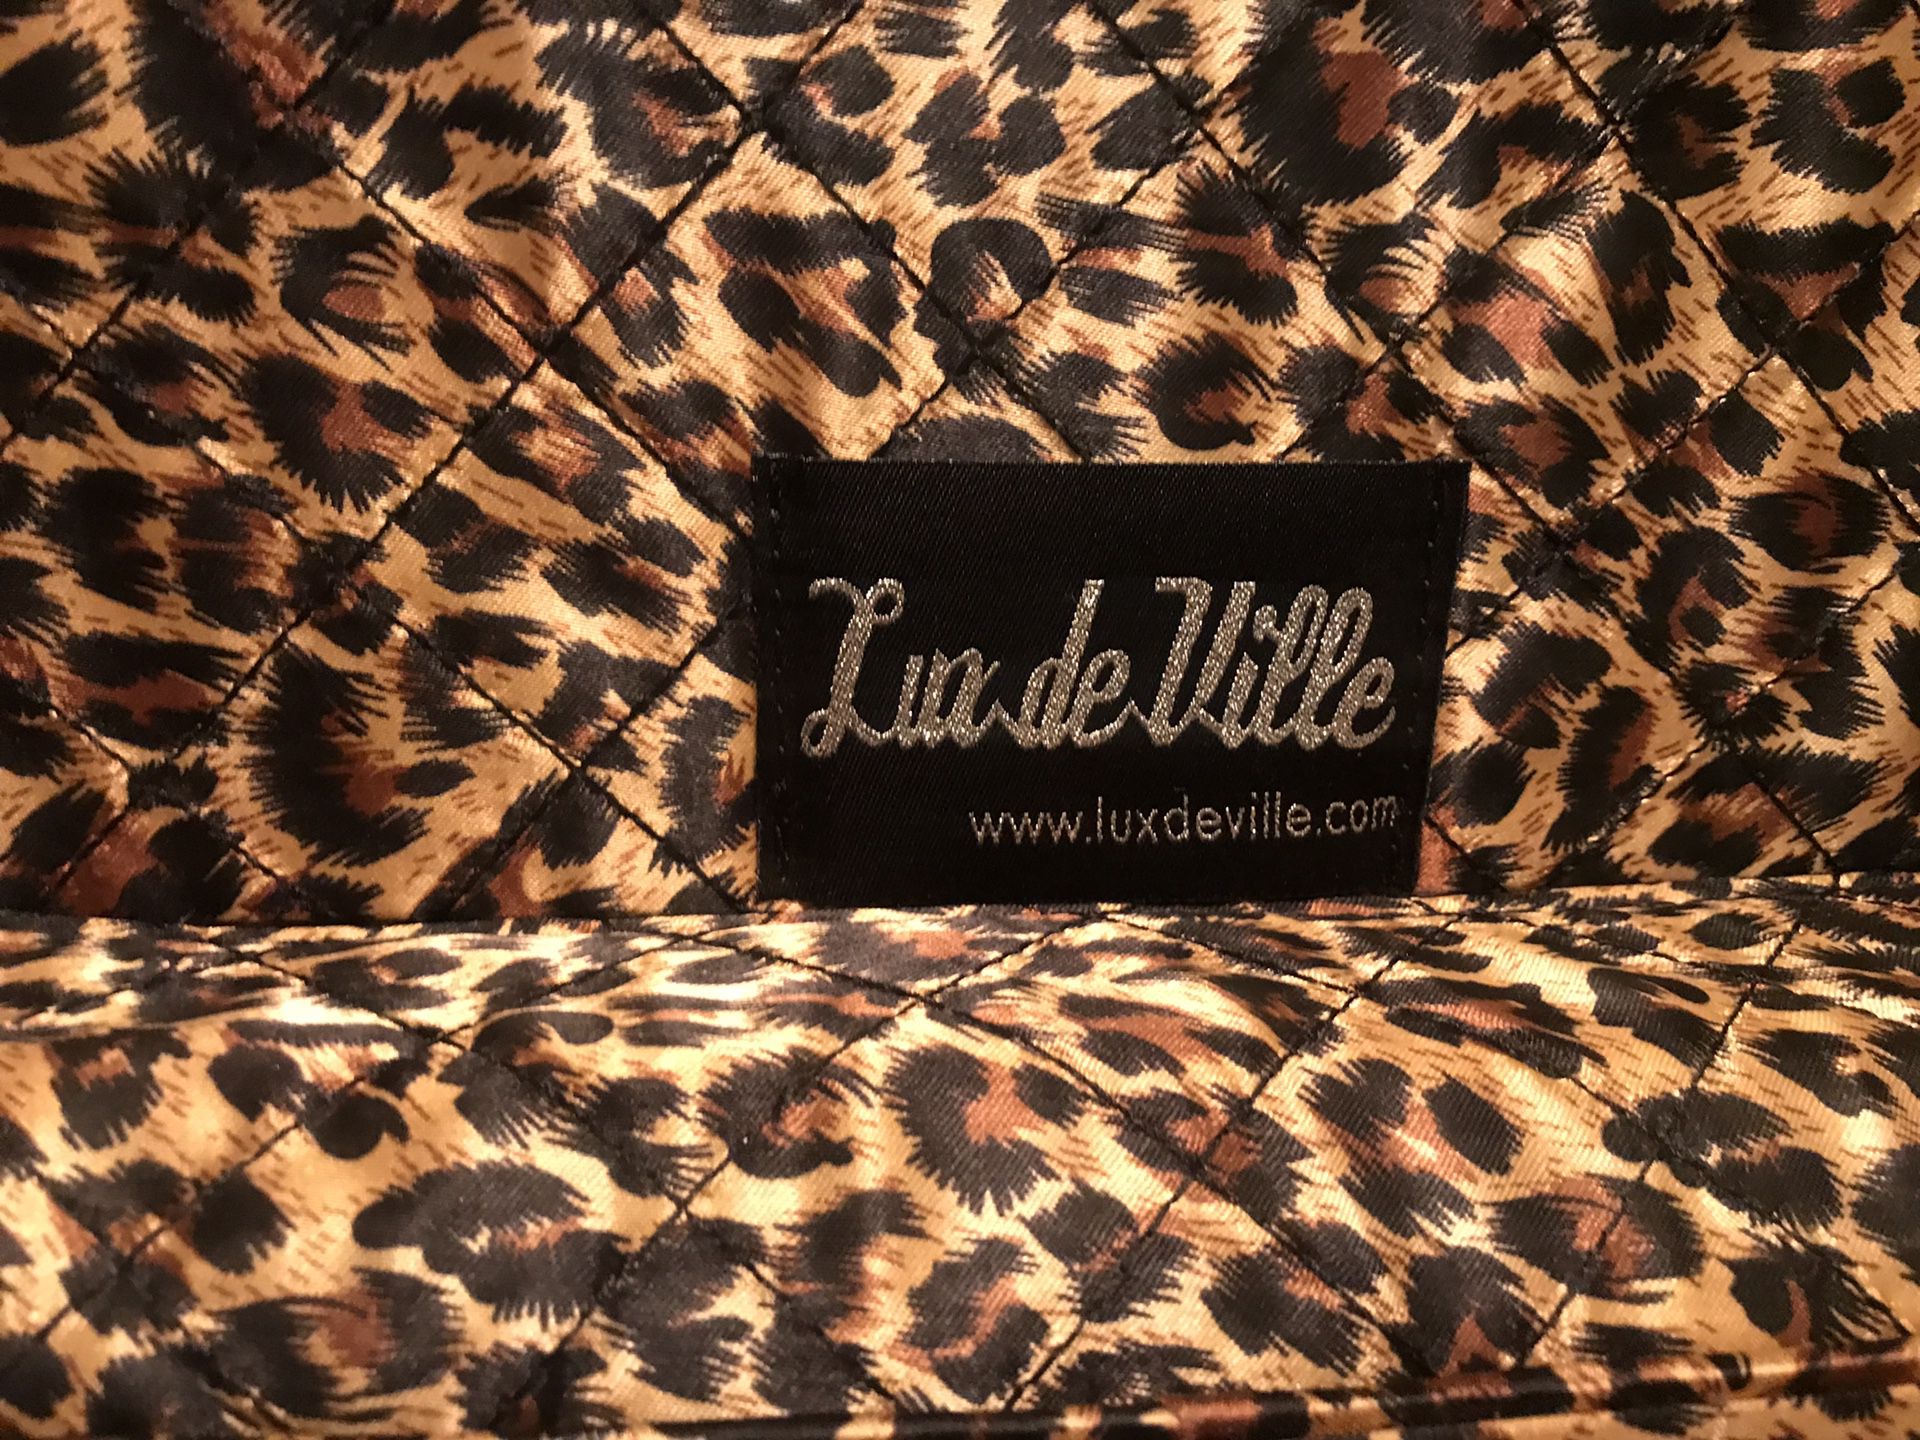 LUX DE VILLE DeVille Coffin Case (Red Rum Sparkle) $150.00 - PicClick